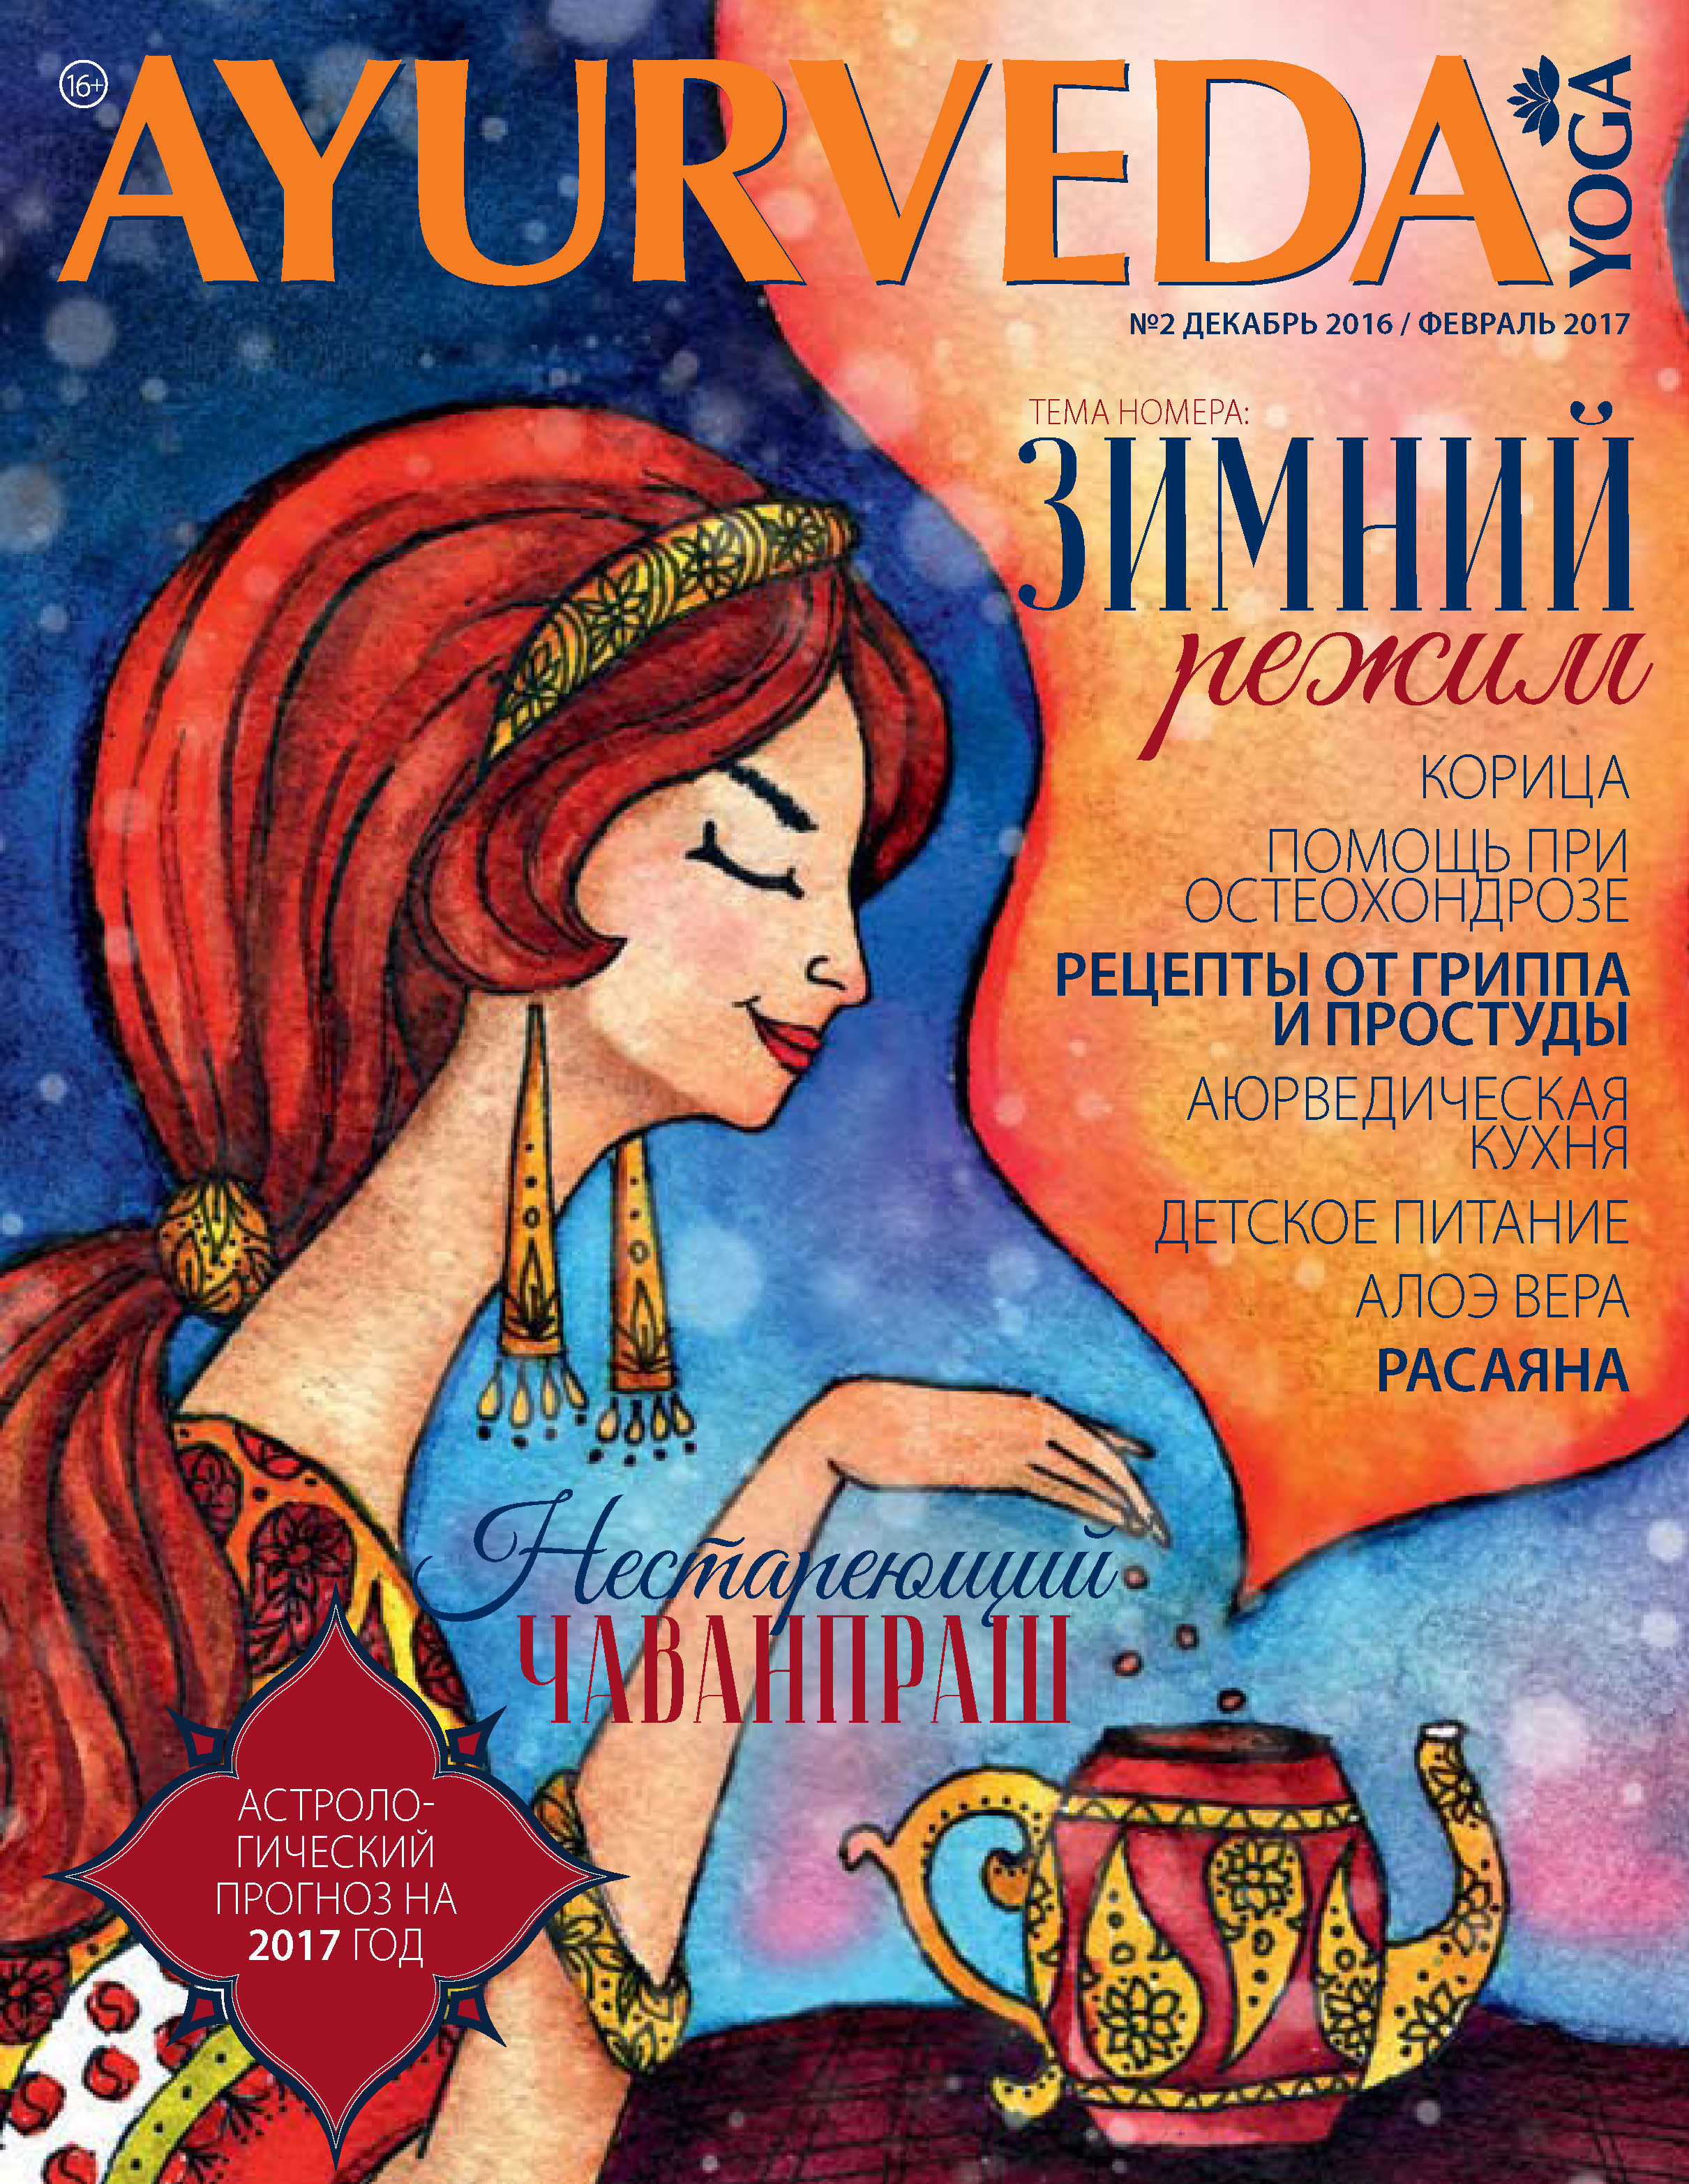 Ayurveda&Yoga№02 / декабрь 2016 – февраль 2017